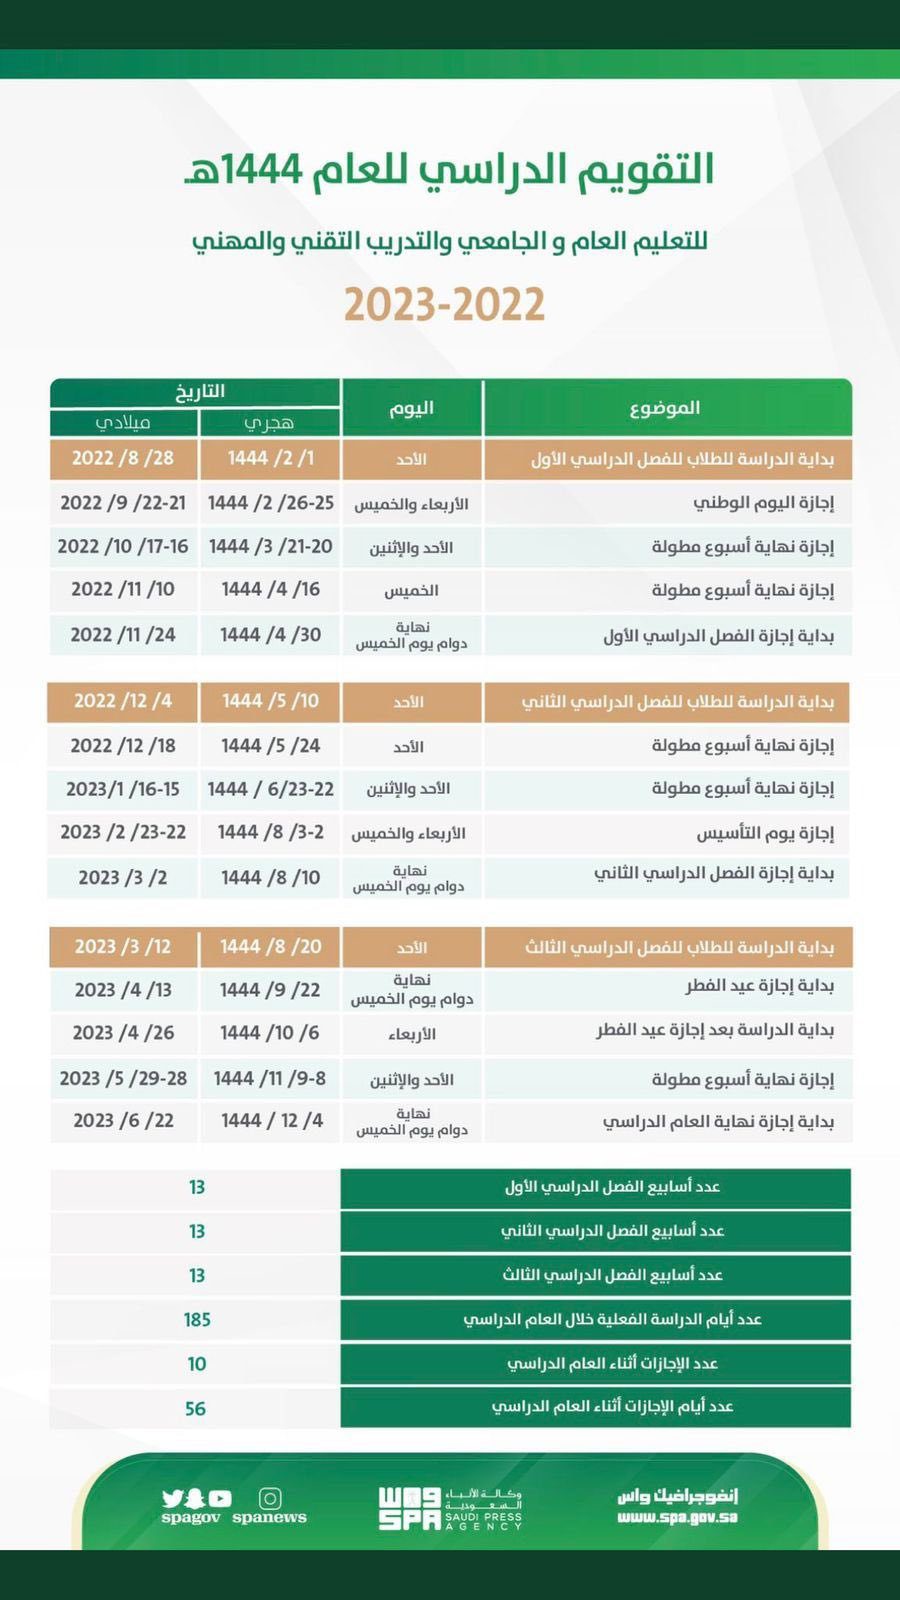 الإجازة المطولة القادمة في الفصل الدراسي الثالث ١٤٤٤ للطلاب في السعودية